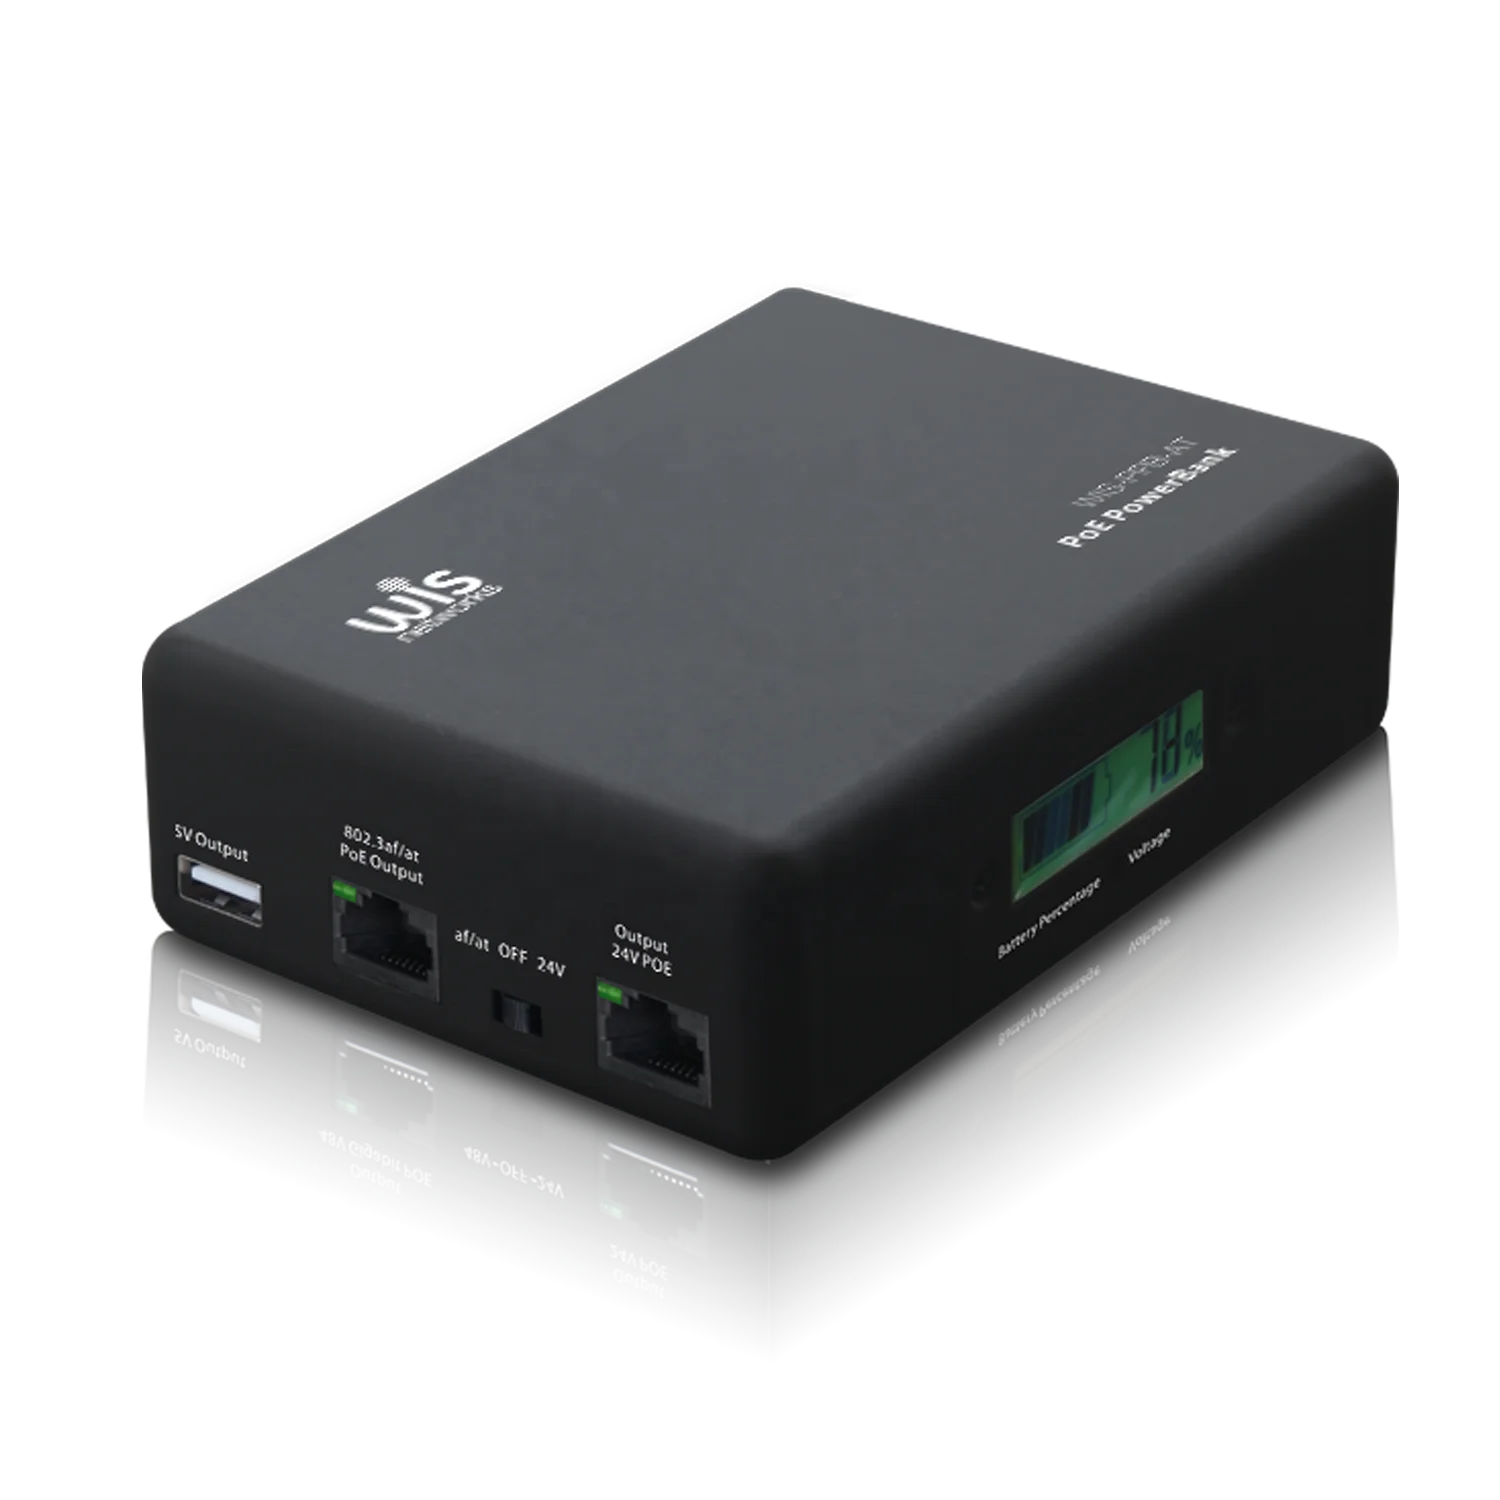 Портативное зарядное устройство POE для деловых поездок, ISP project 802.3af/at POE, портативное зарядное устройство 24 В/48 В ubnt/mikrotik/mimosa/cambium